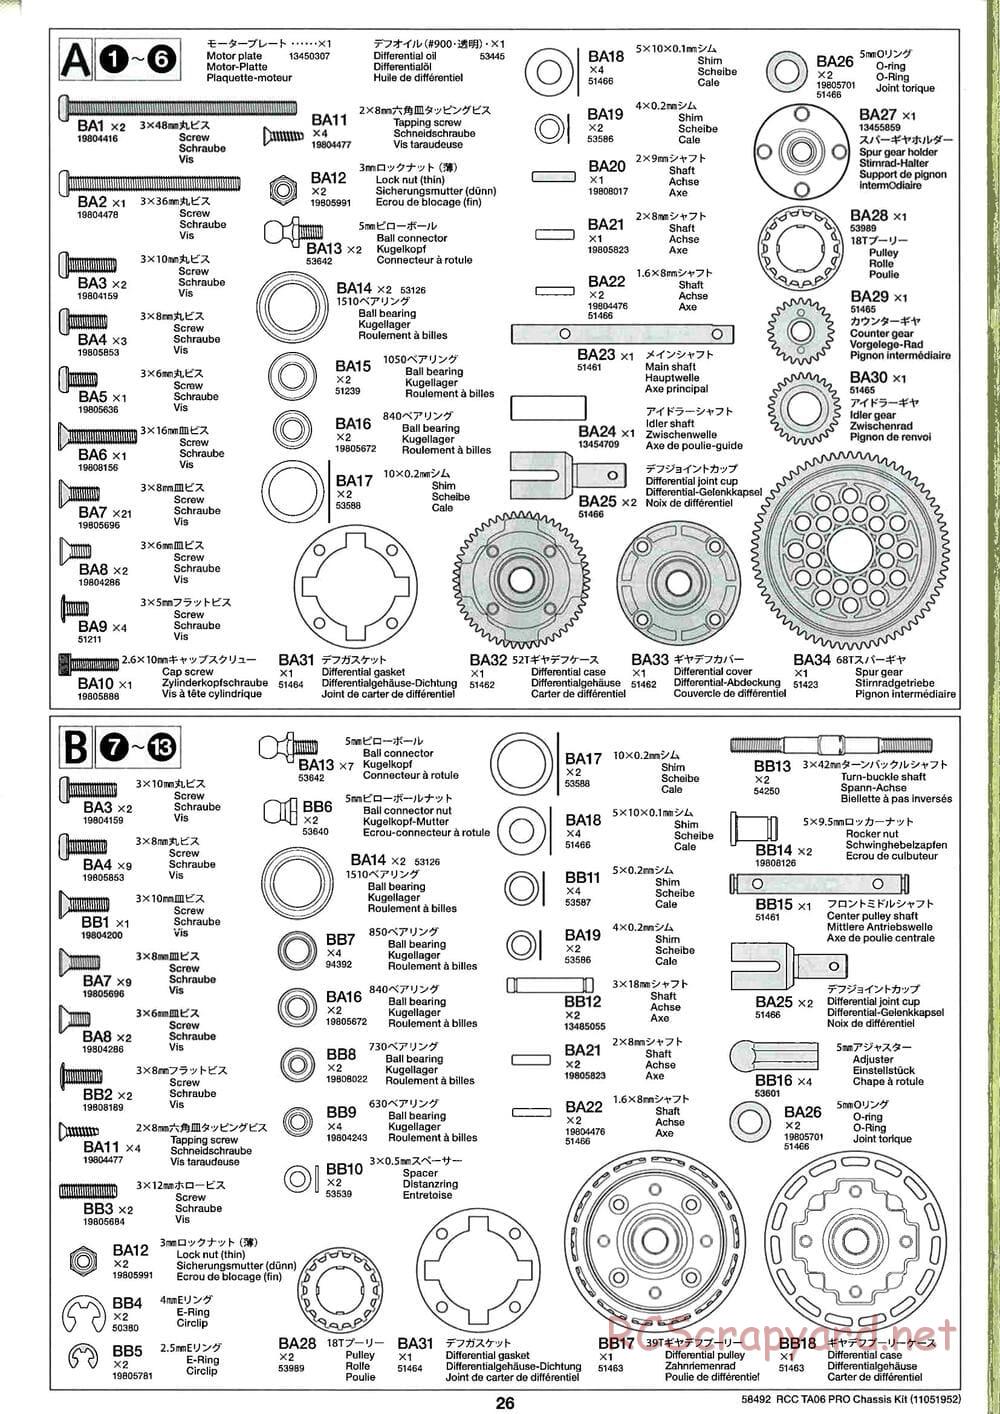 Tamiya - TA06 Pro Chassis - Manual - Page 26